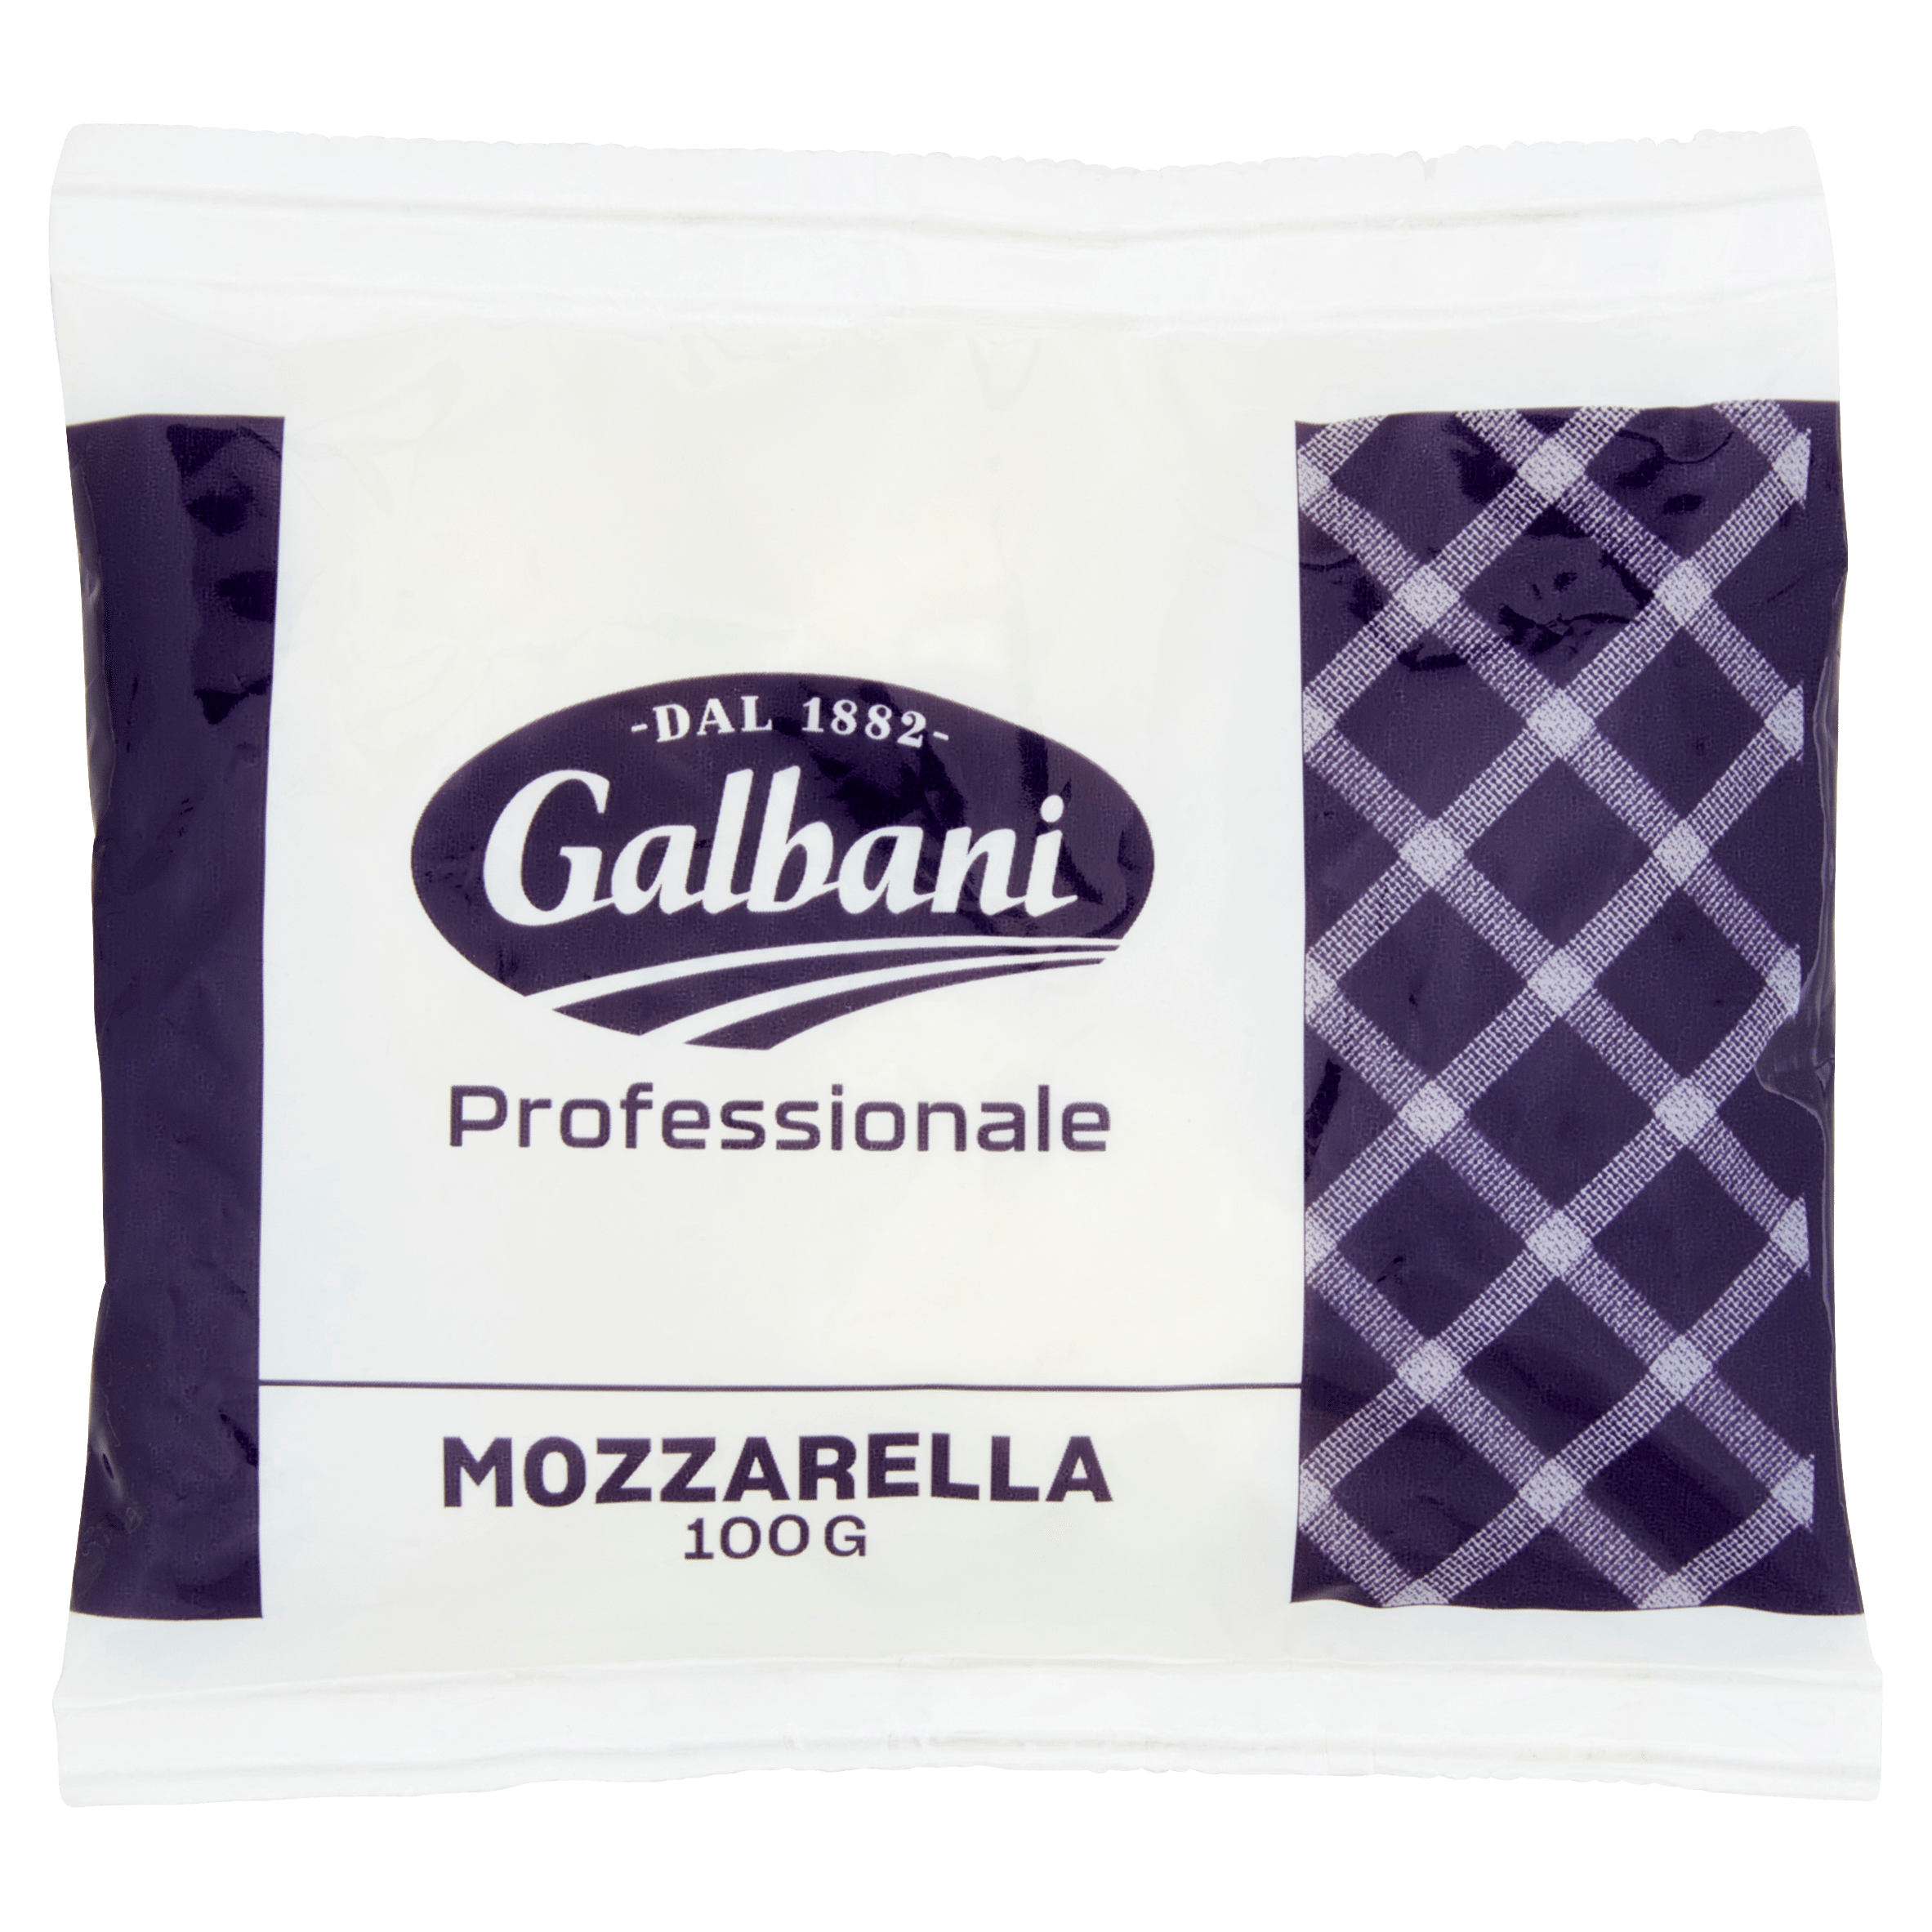 Galbani Professionale Mozzarella 100 g